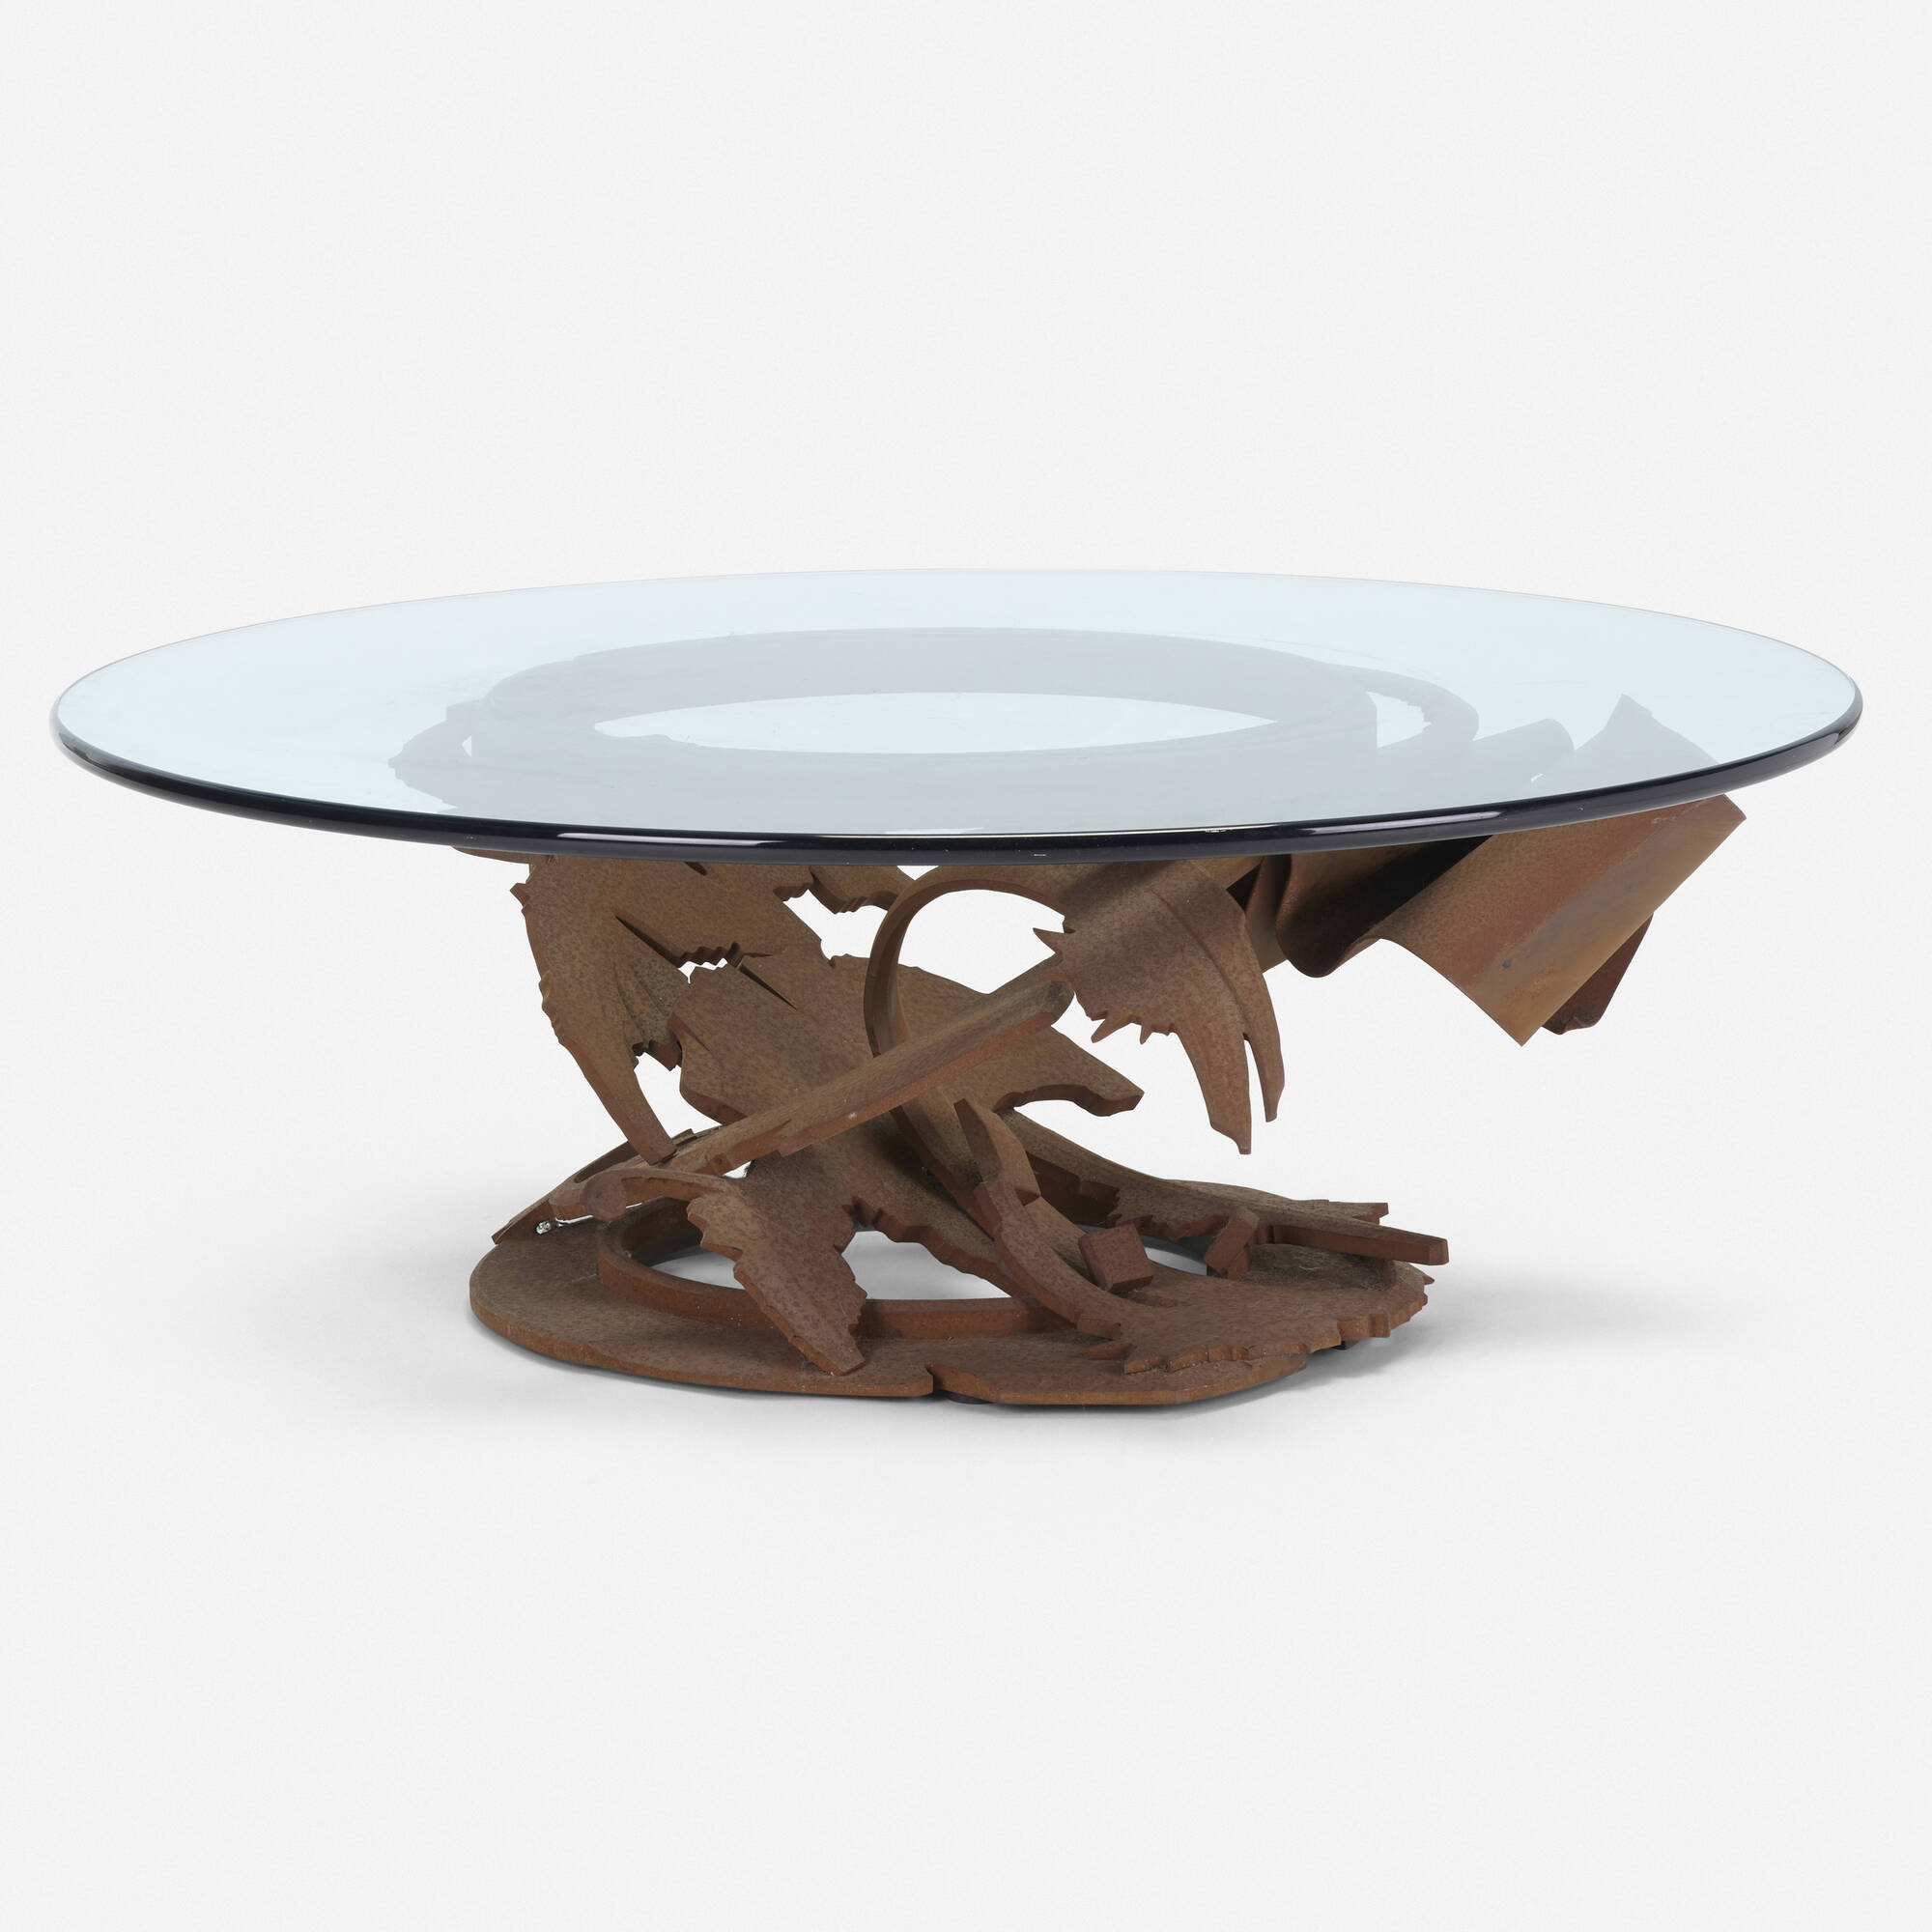 La malle en coin - Coffee table LOUIS VUITTON alzer #decorationinterieur # coffeetable #tablebasse #vuitton